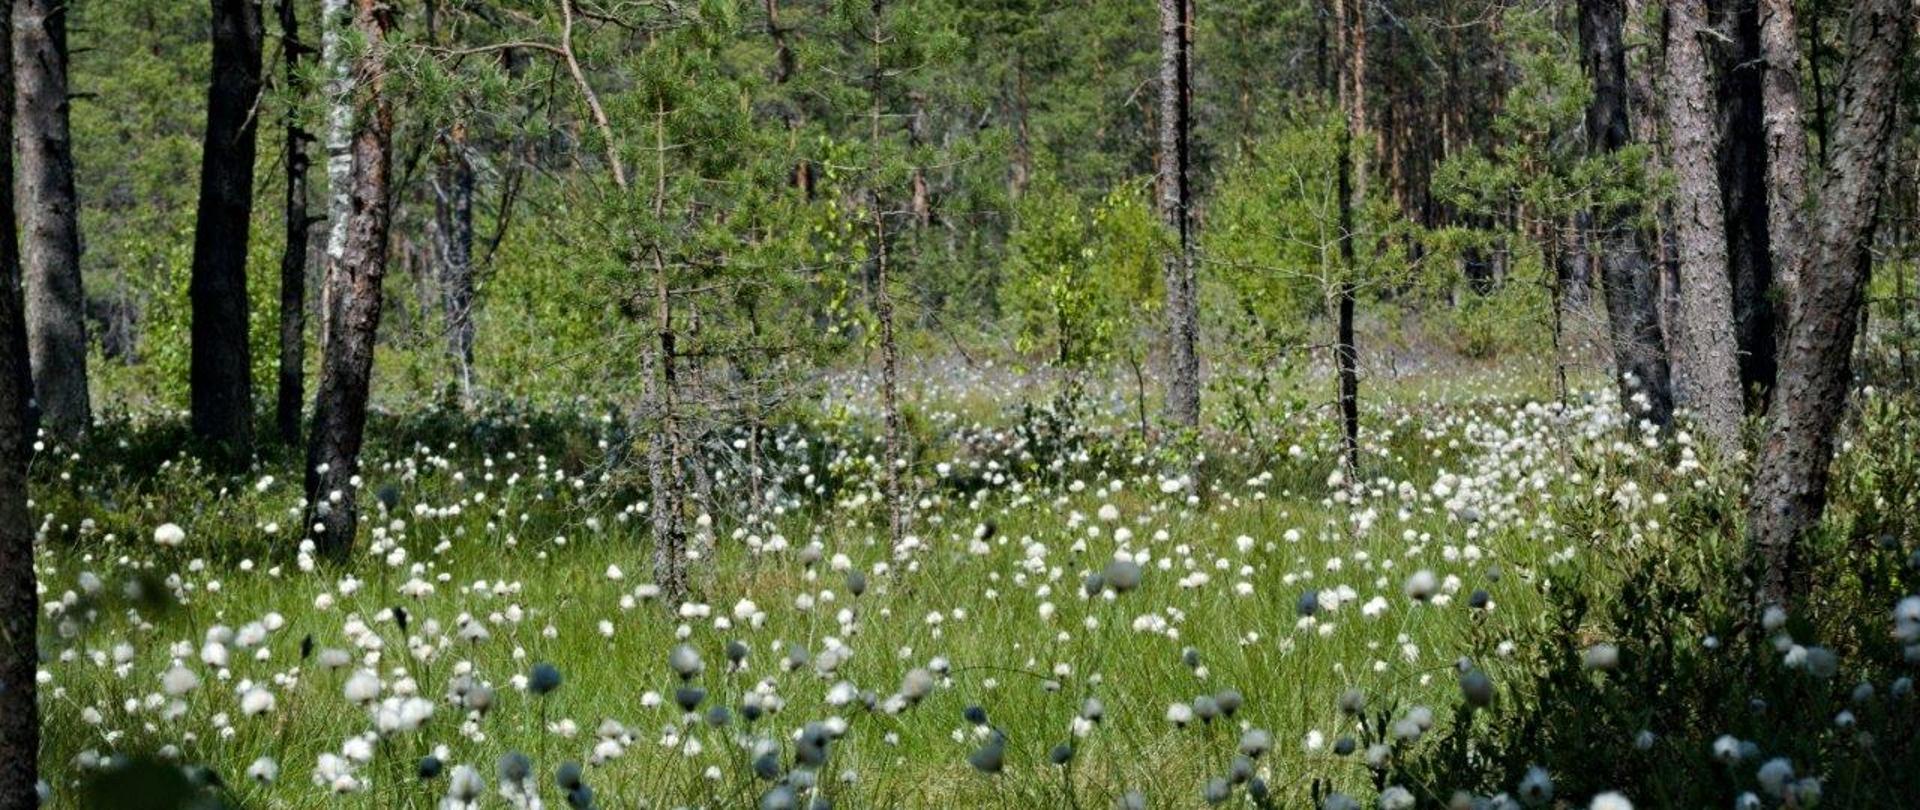 Zdjęcie przedstawia krajobraz łąki pełnej kwiatów w głębi lasu.